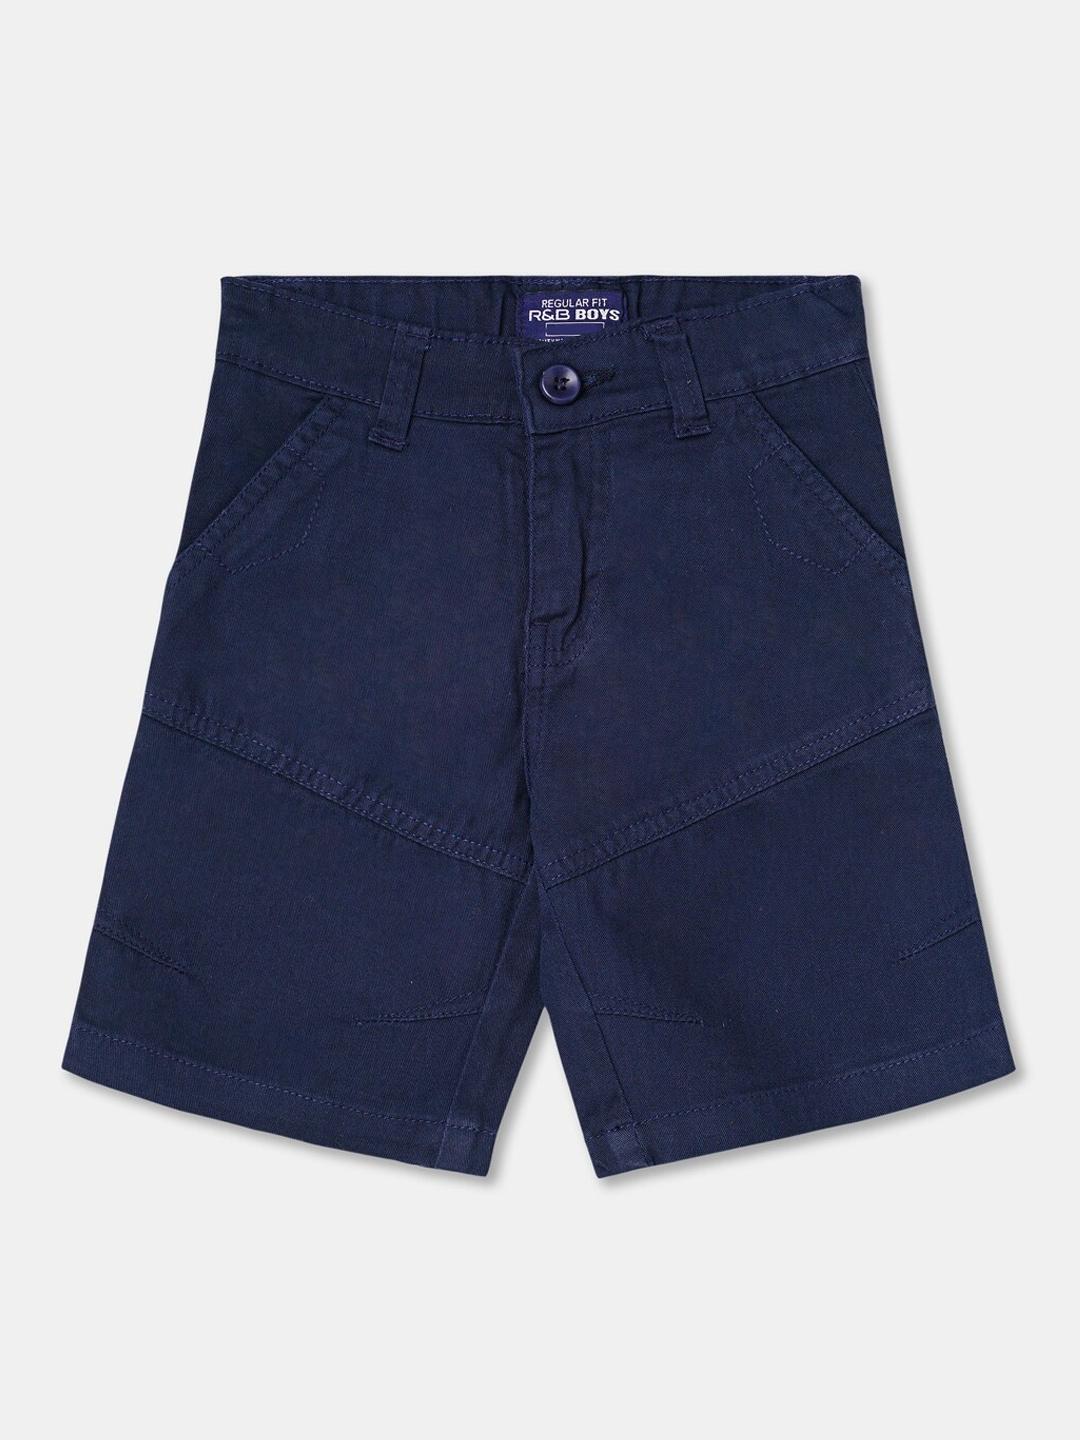 r&b boys blue shorts